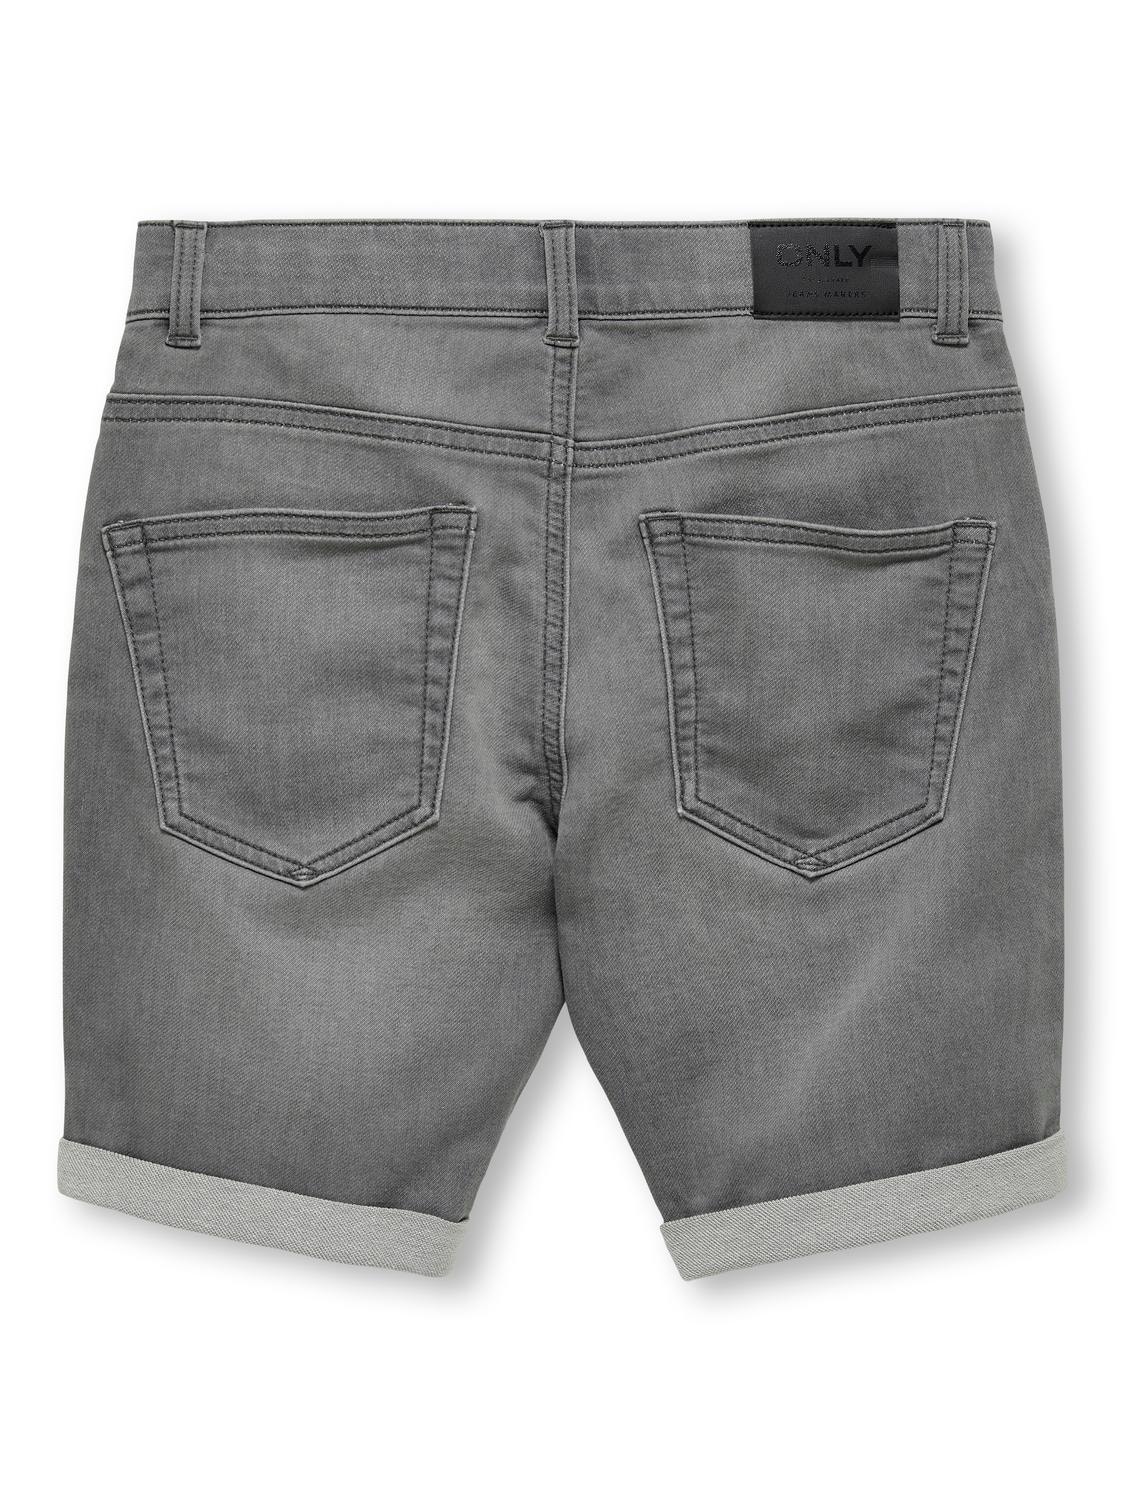 ONLY Skinny Fit Fold-up hems Jeans -Light Grey Denim - 15283232